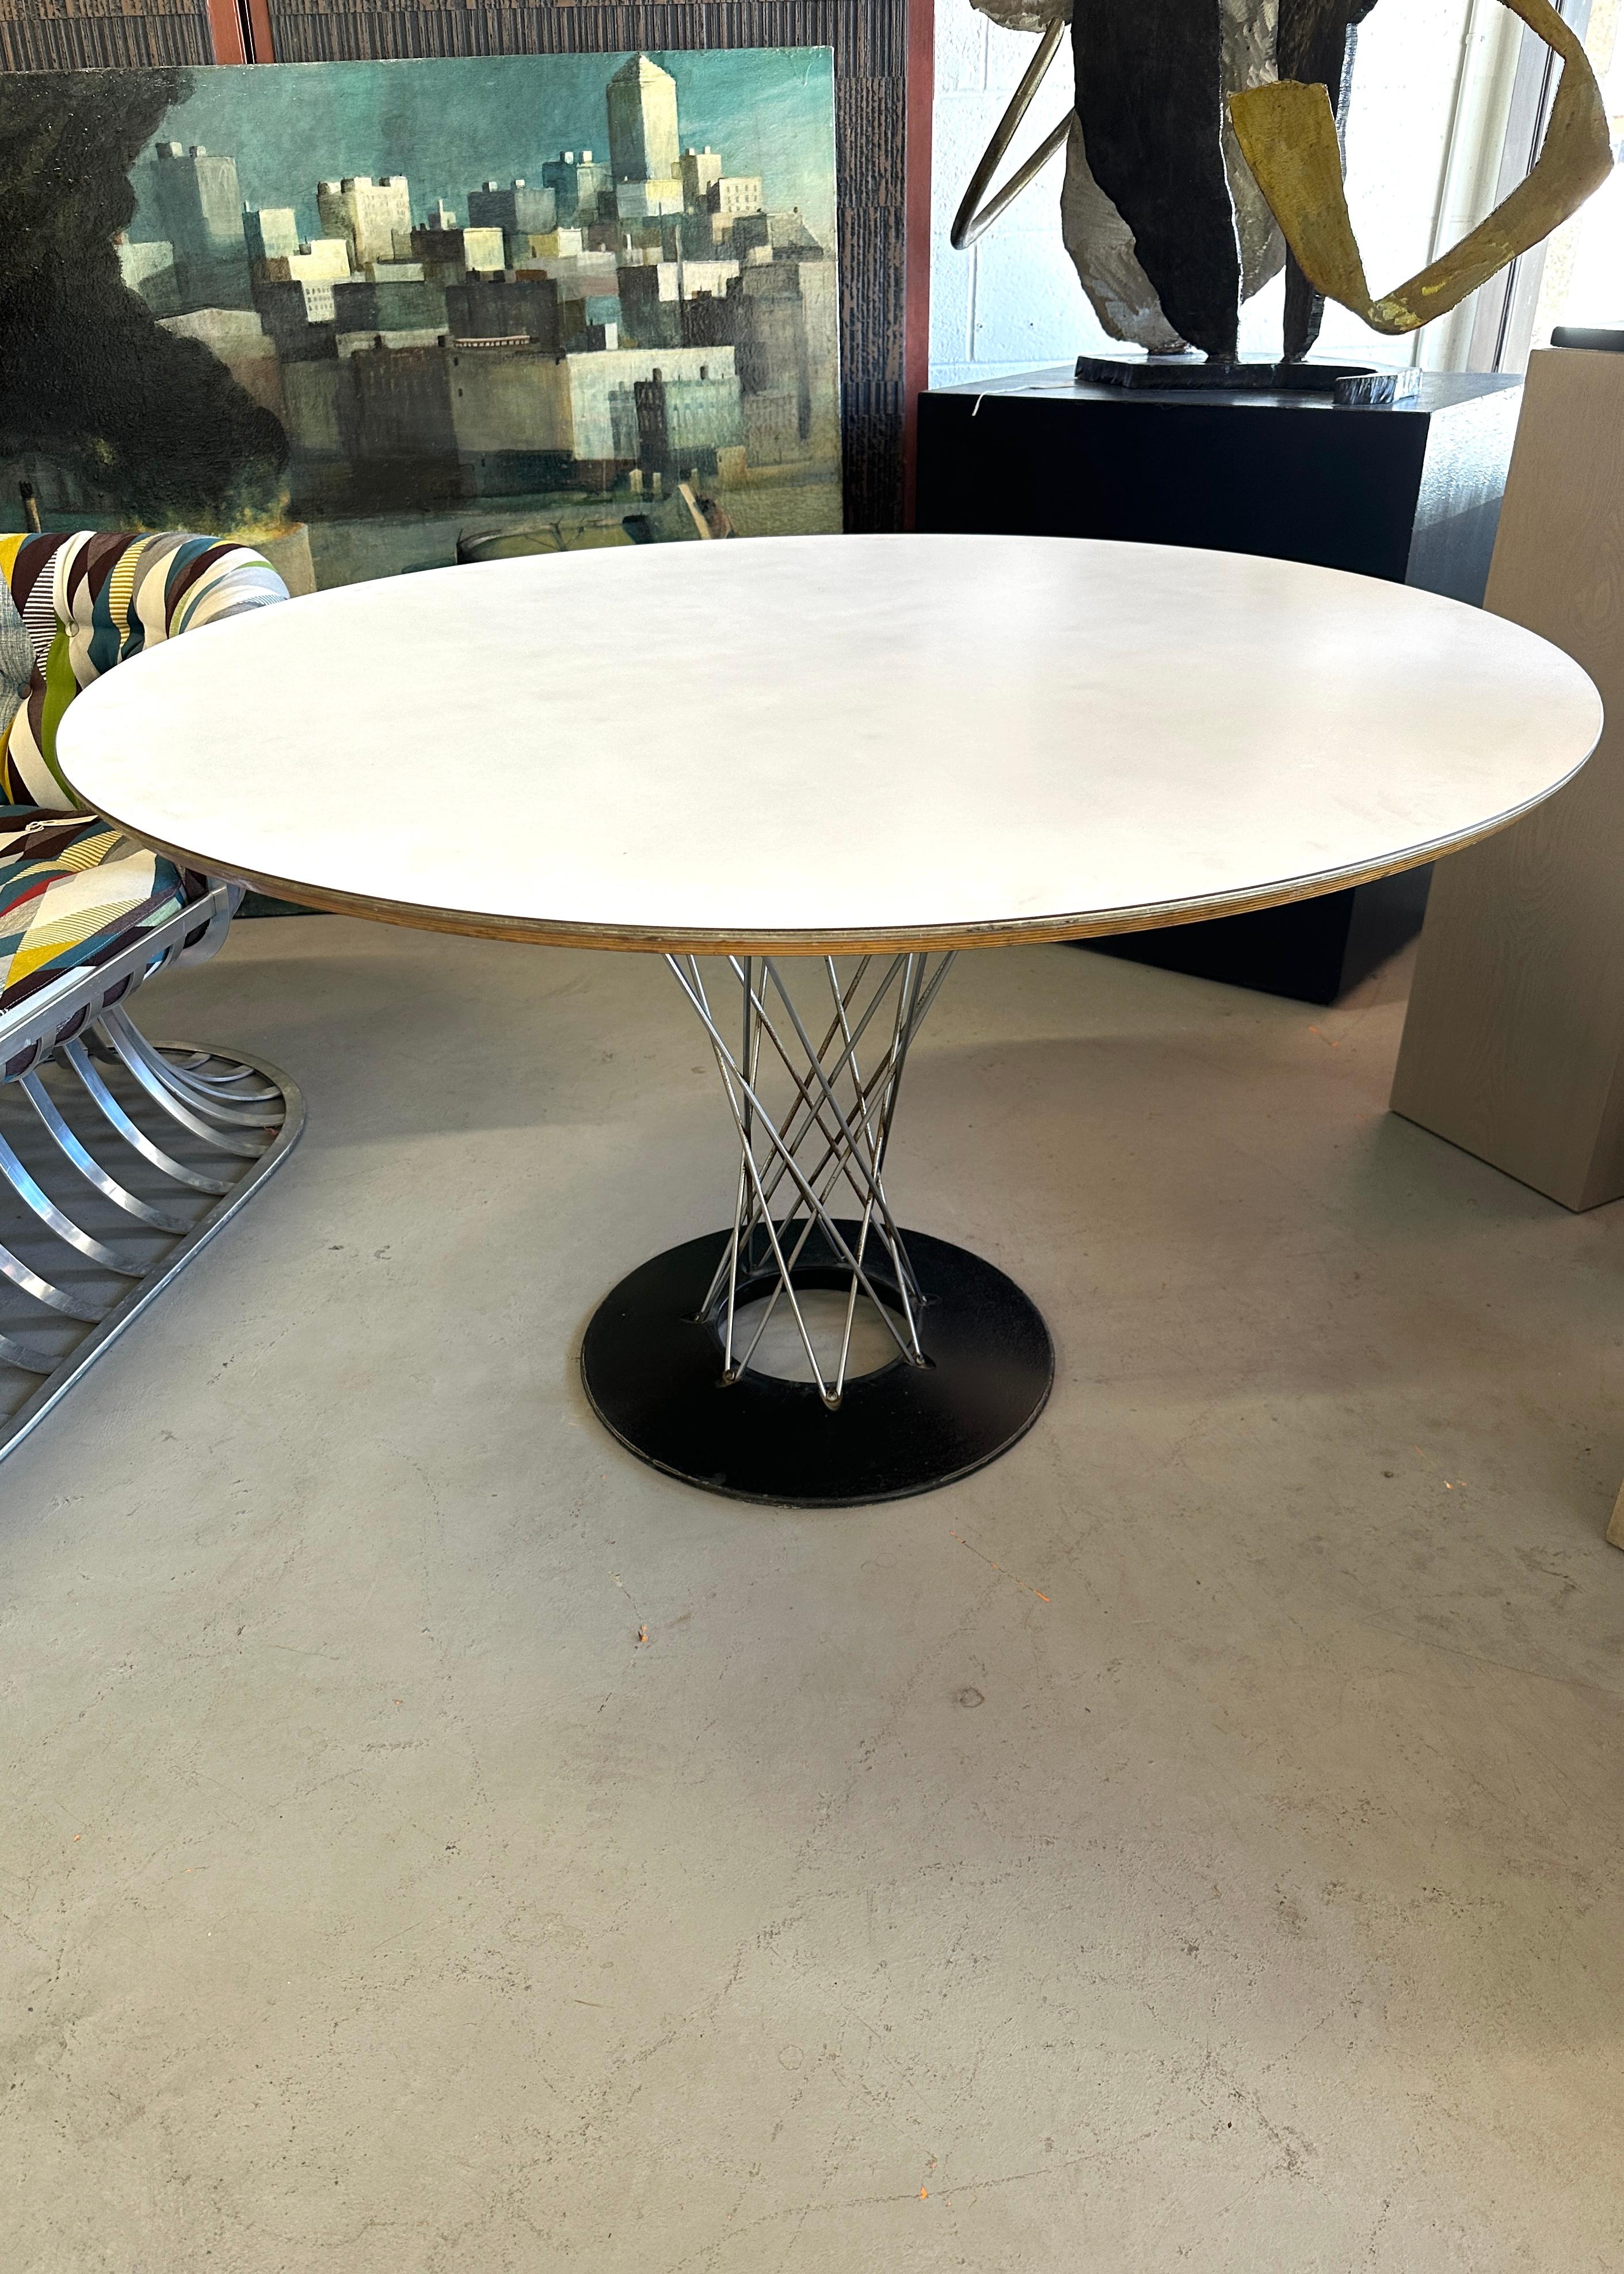 Ein schönes Beispiel für einen Vintage-Tisch aus den 1960er Jahren von Isamu Noguchi Cyclone für Knoll mit dem Label 320 Park Avenue darunter.  Dieser Tisch hat einen Durchmesser von weniger als 48 Zoll, und Knoll stellt diese Tischgröße nicht mehr